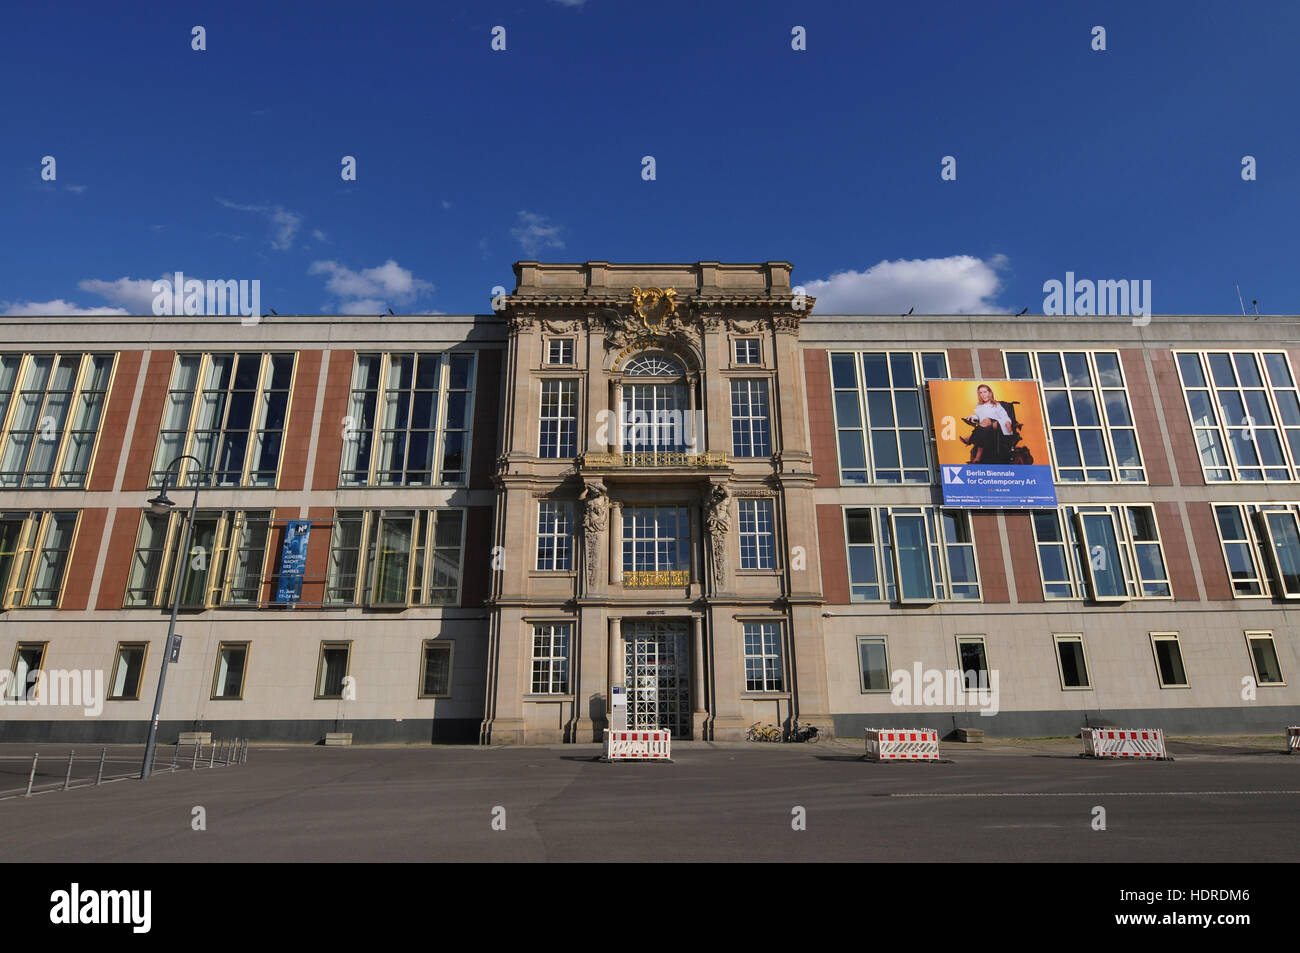 ESMT, Staatsratsgebaeude, Schlossplatz Mitte di Berlino, Deutschland / Staatsratsgebäude Foto Stock